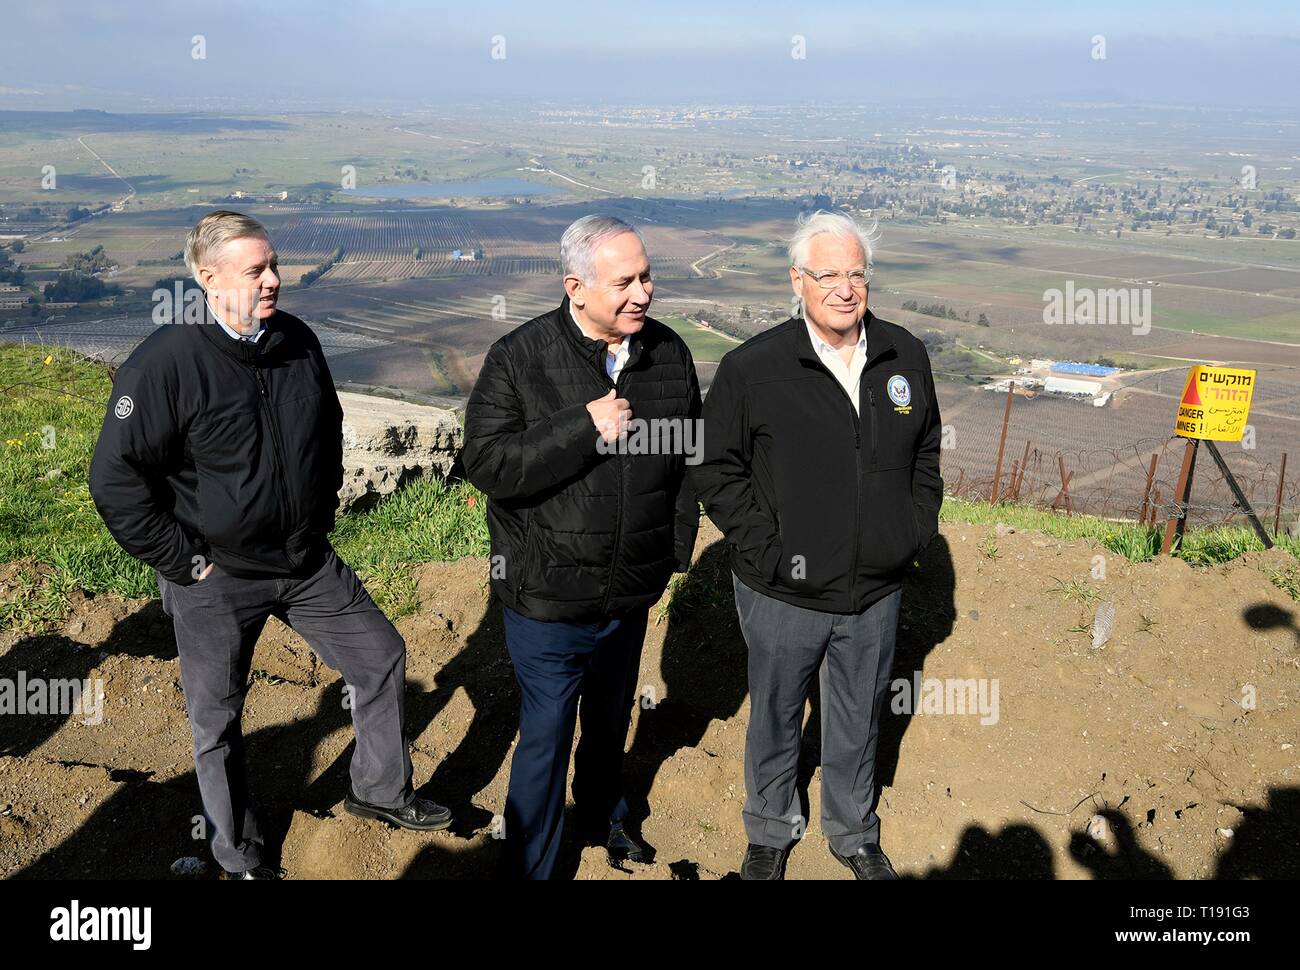 Il Primo Ministro israeliano Benjamin Netanyahu, centro visita U.S. Il senatore Lindsey Graham, a sinistra, E DEGLI STATI UNITI Ambasciatore di Israele David Friedman, a destra in un IDF lookout point agli israeliani-occupato Golan Marzo 11, 2019 nel Golan, Israele. Foto Stock